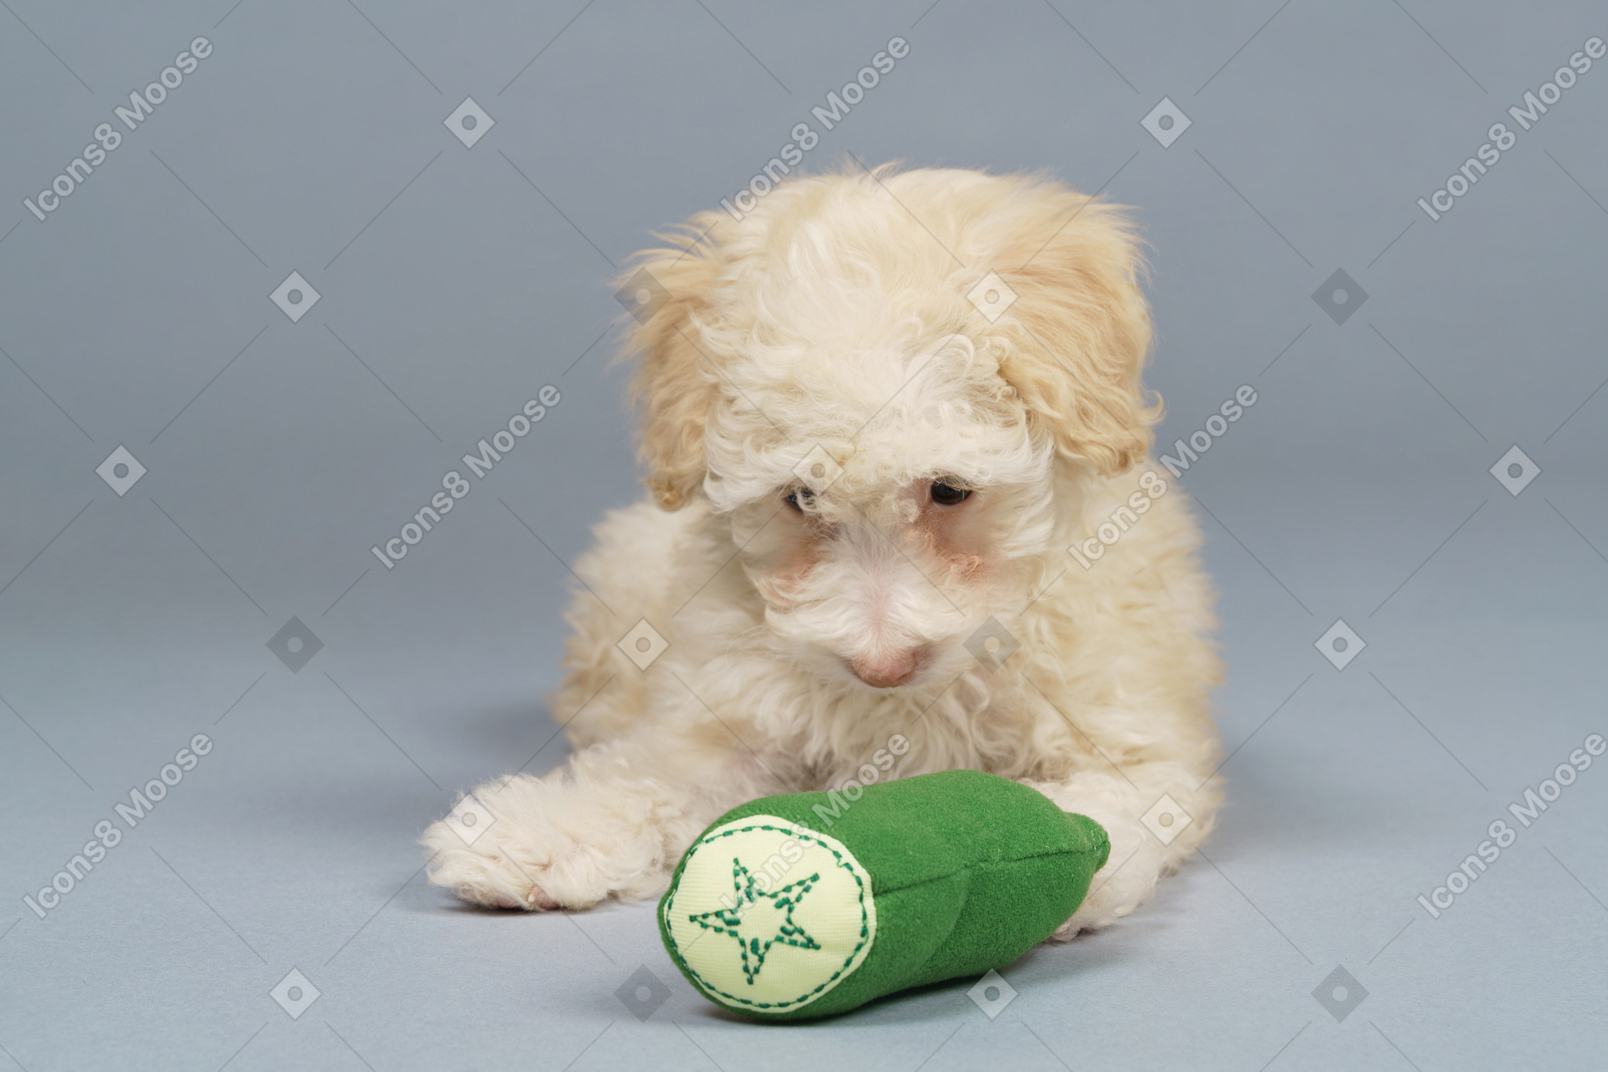 Comprimento total de um pequeno poodle com um pepino de brinquedo